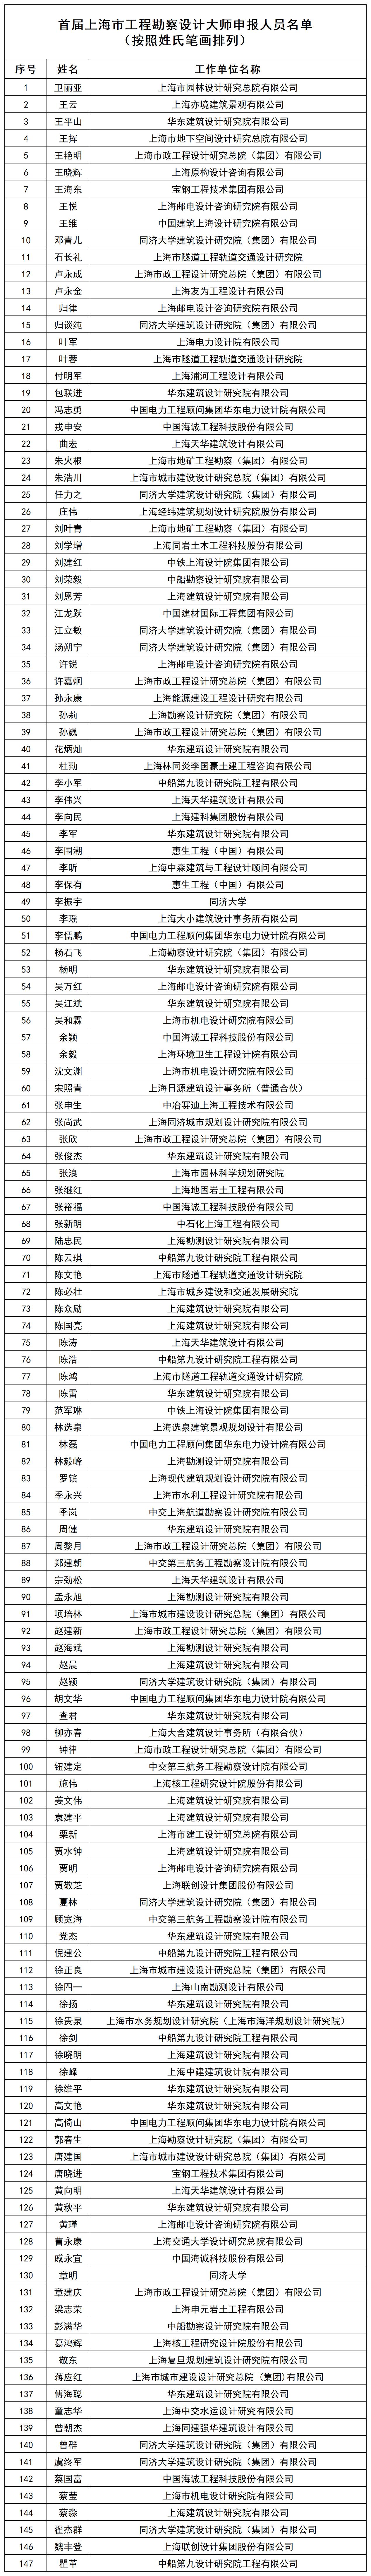 首届上海市工程勘察设计大师申报人员名单_花名册1.jpg